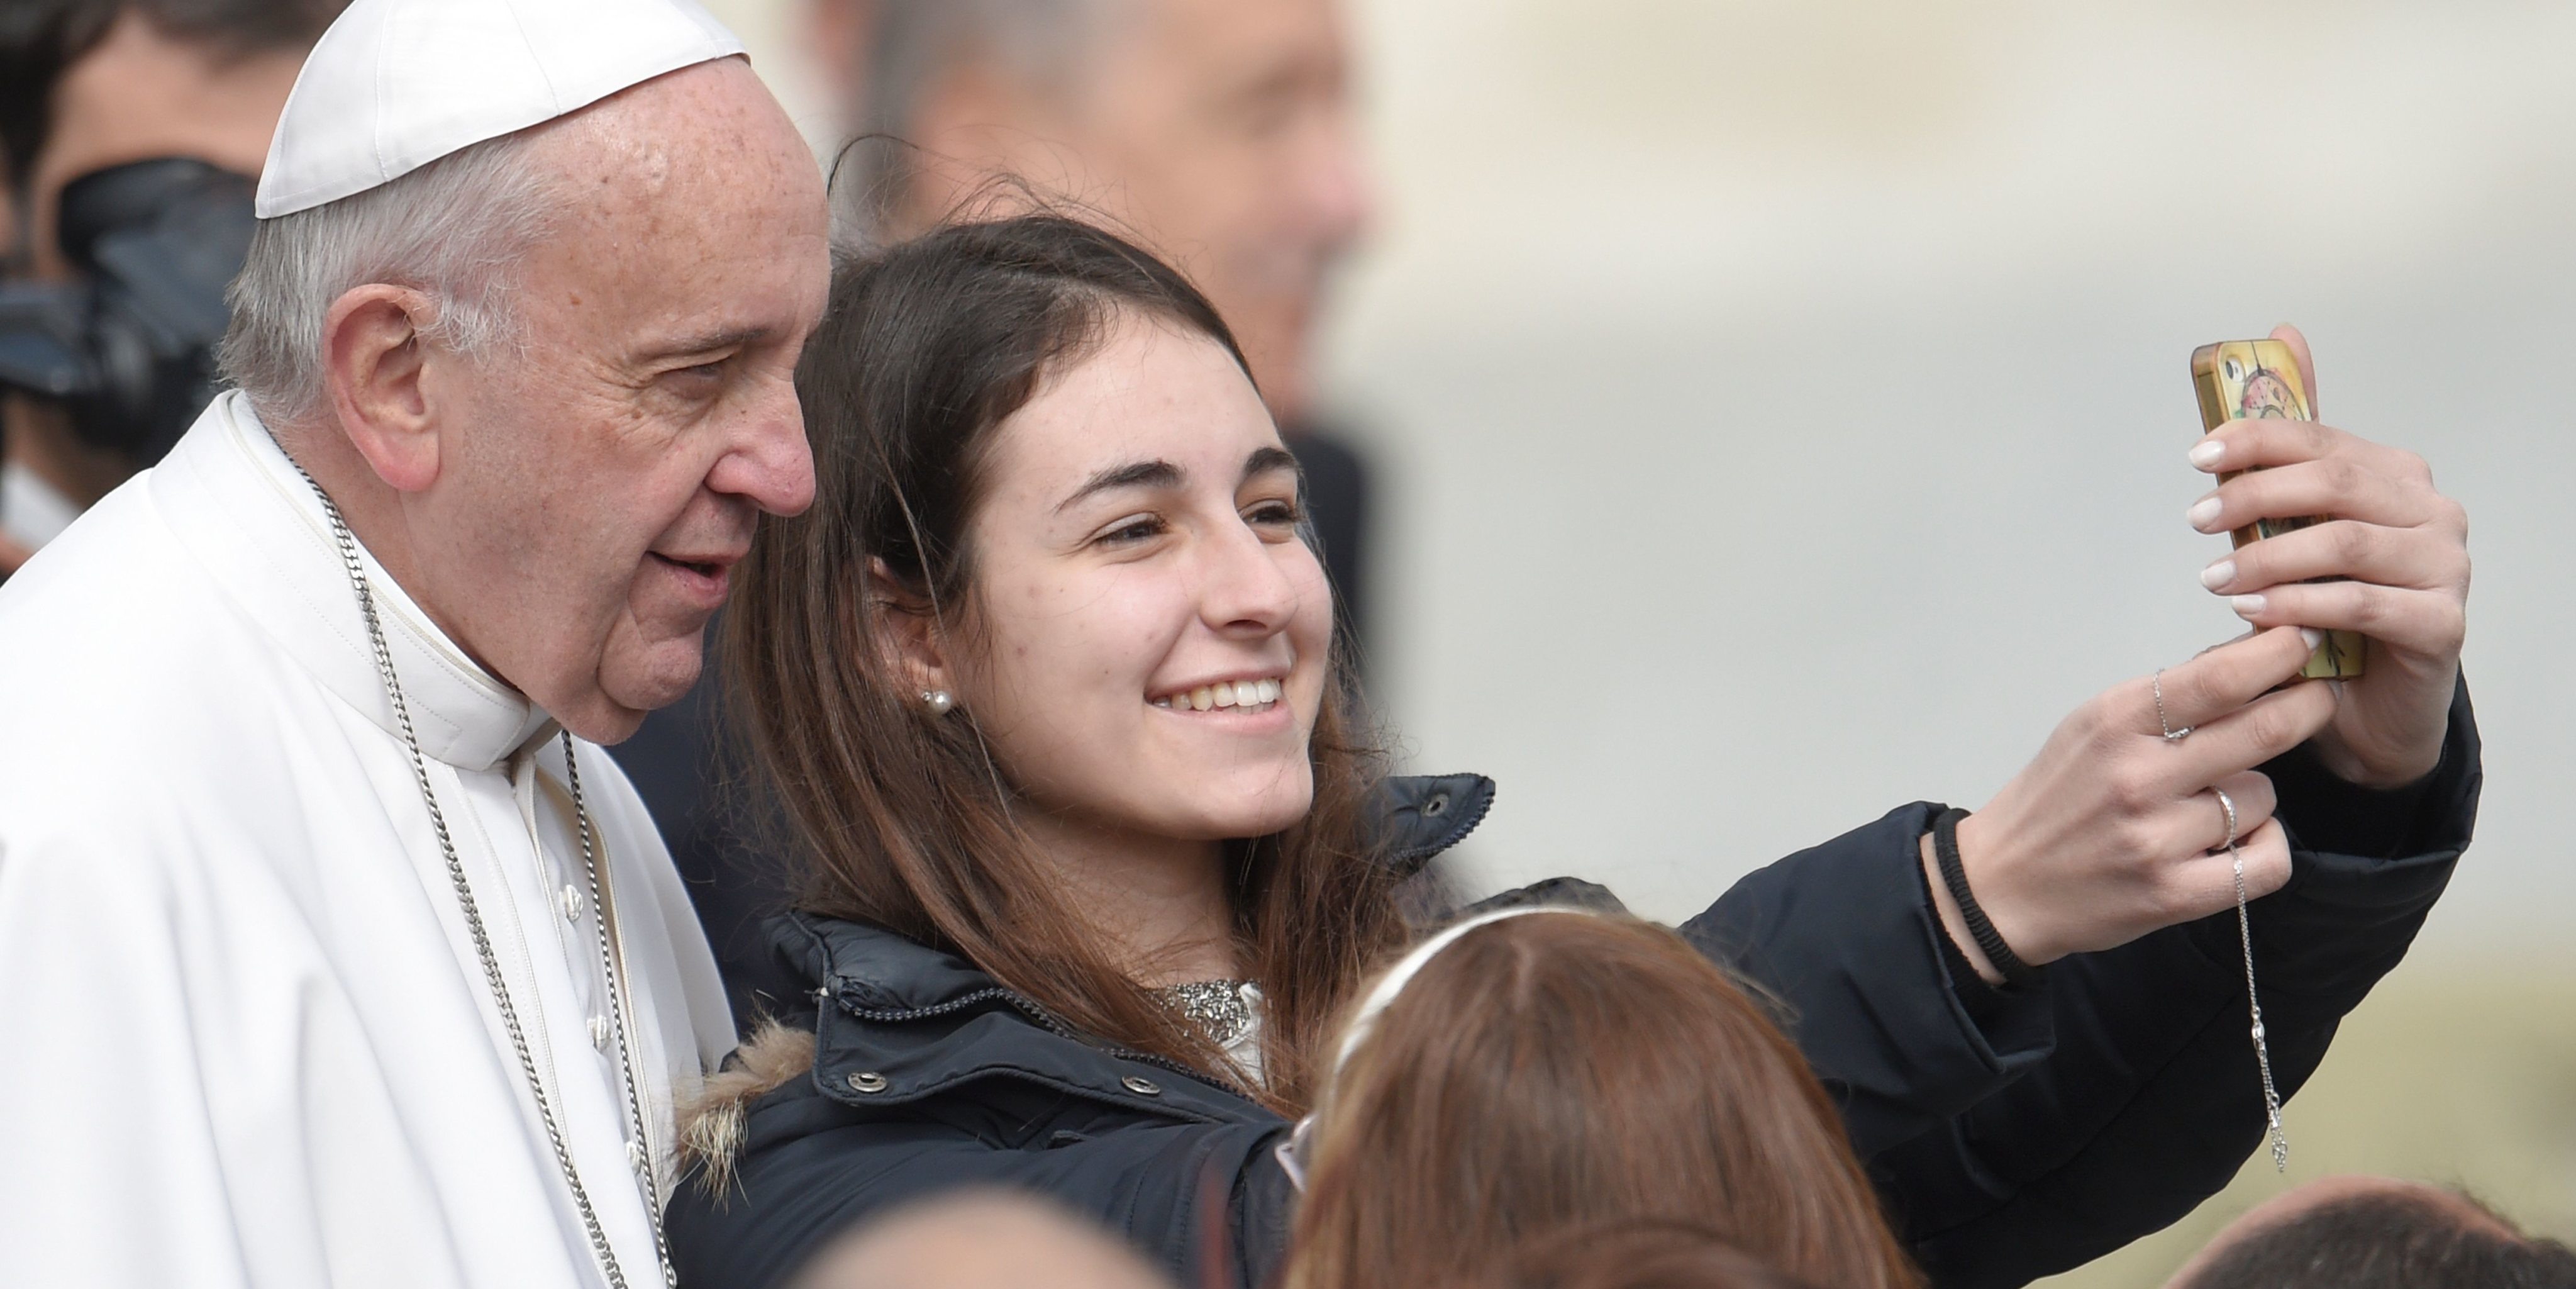 Vida longa ao Papa Francisco, suas ideias e ações